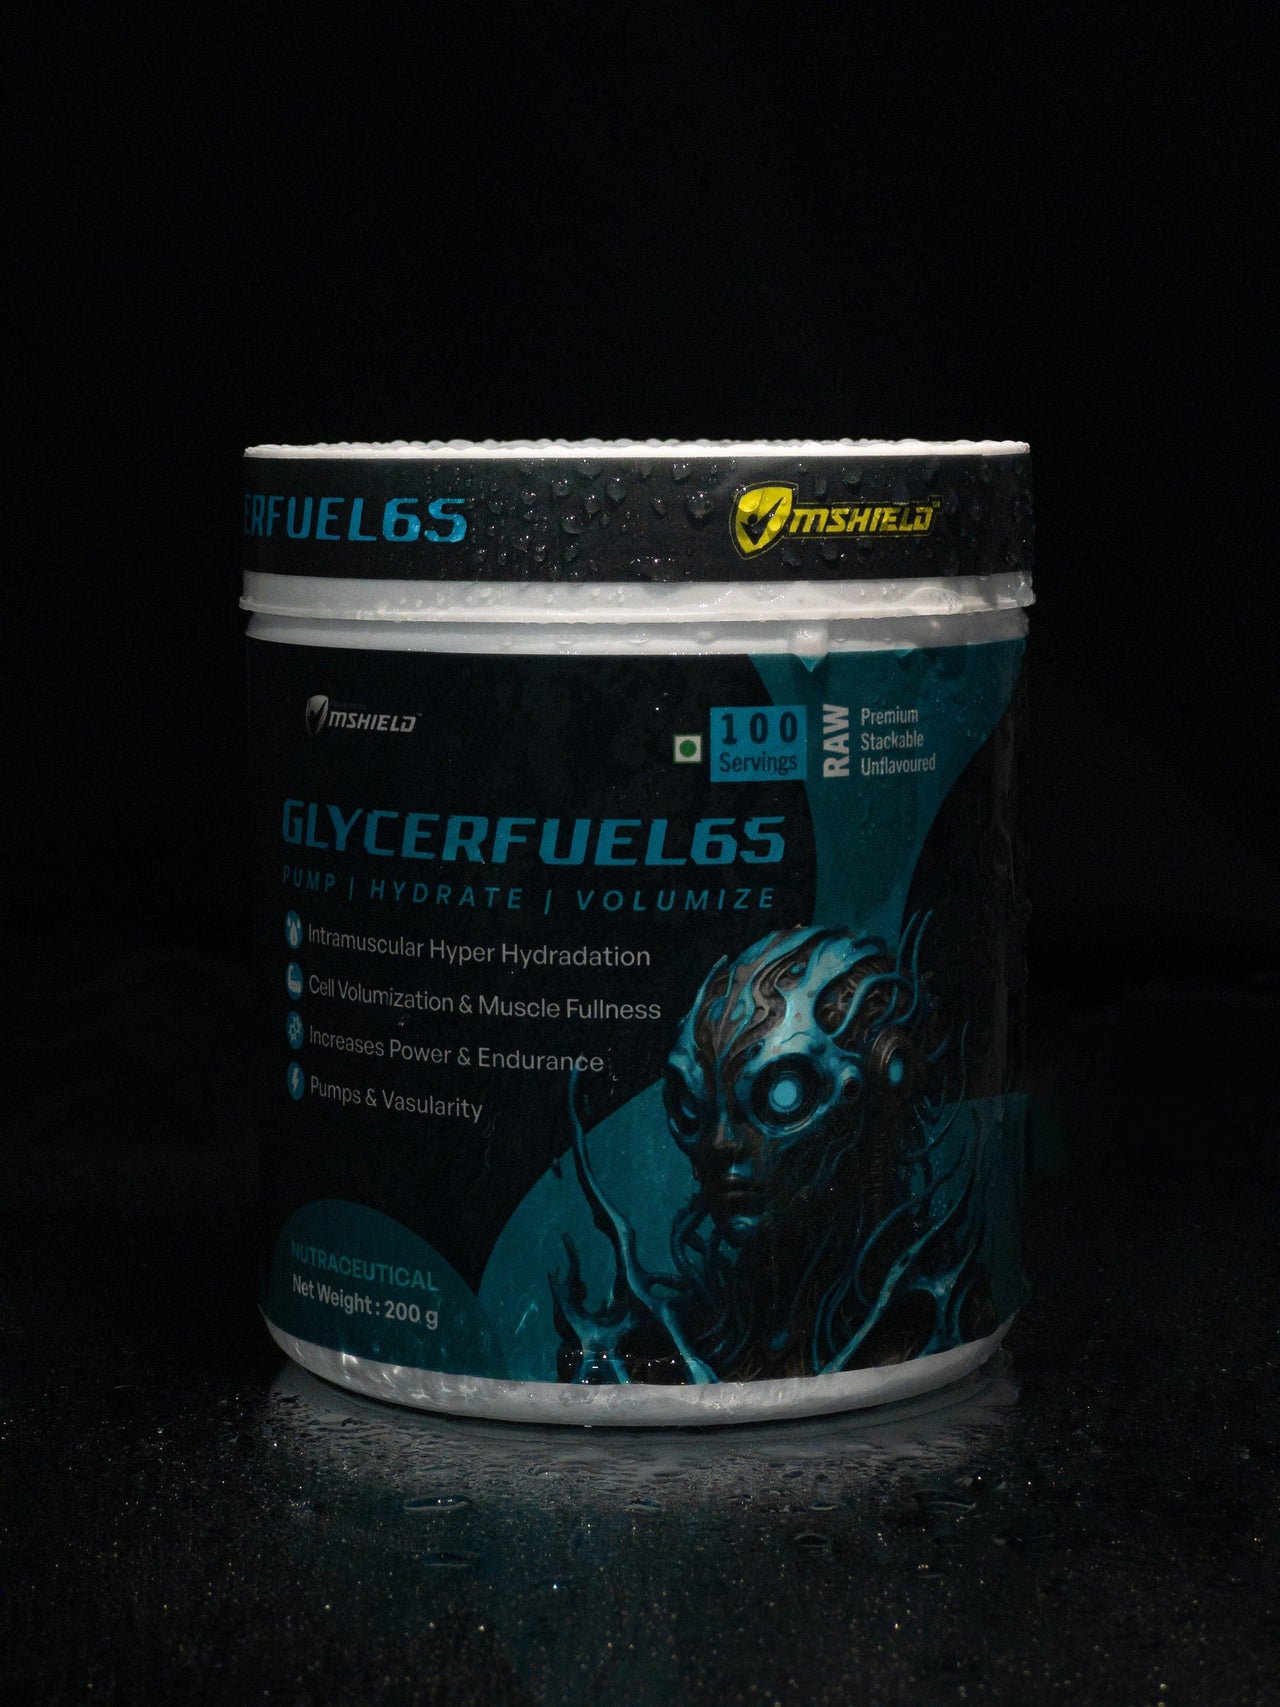 Glycerfuel-65: Hydroprime Glycerol Supplement Powder for Athletic Endurance